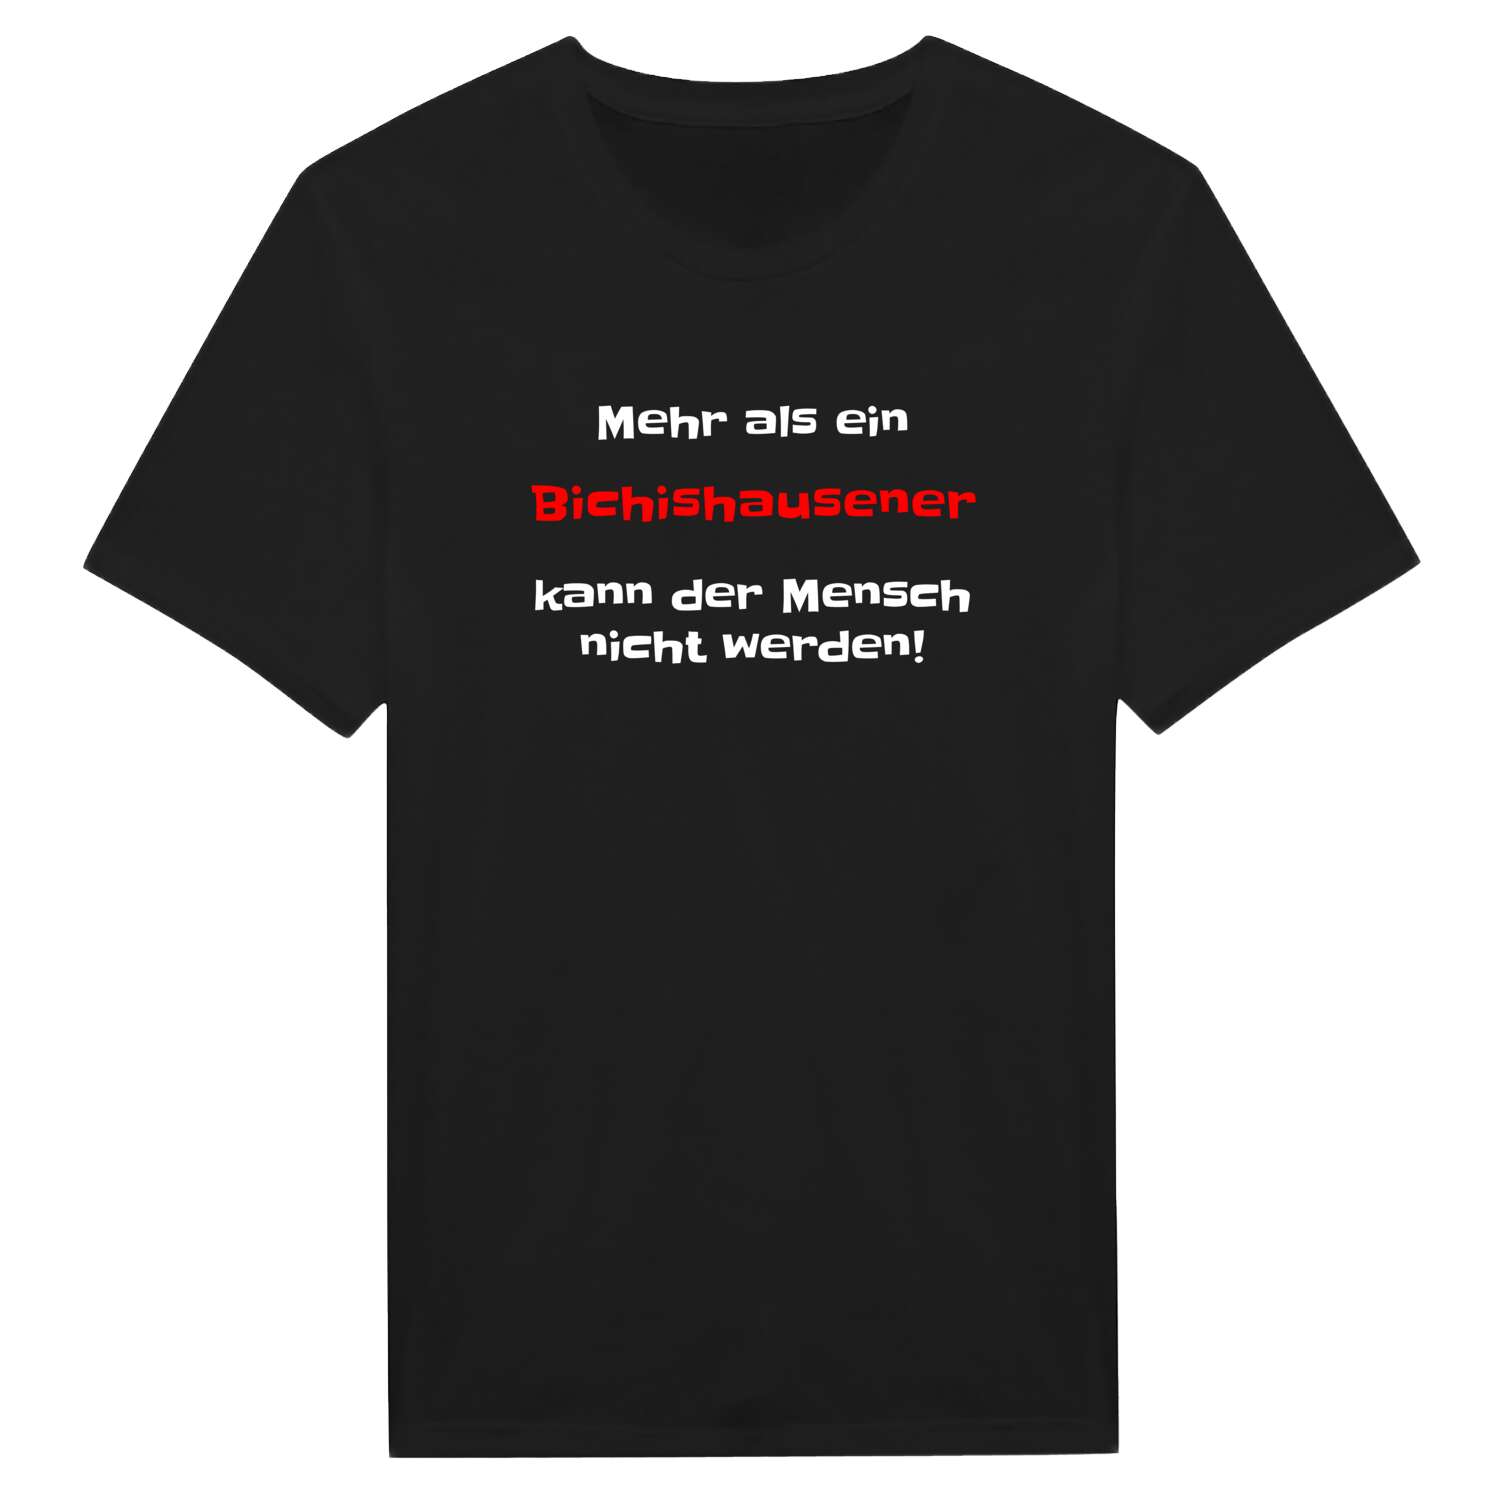 Bichishausen T-Shirt »Mehr als ein«